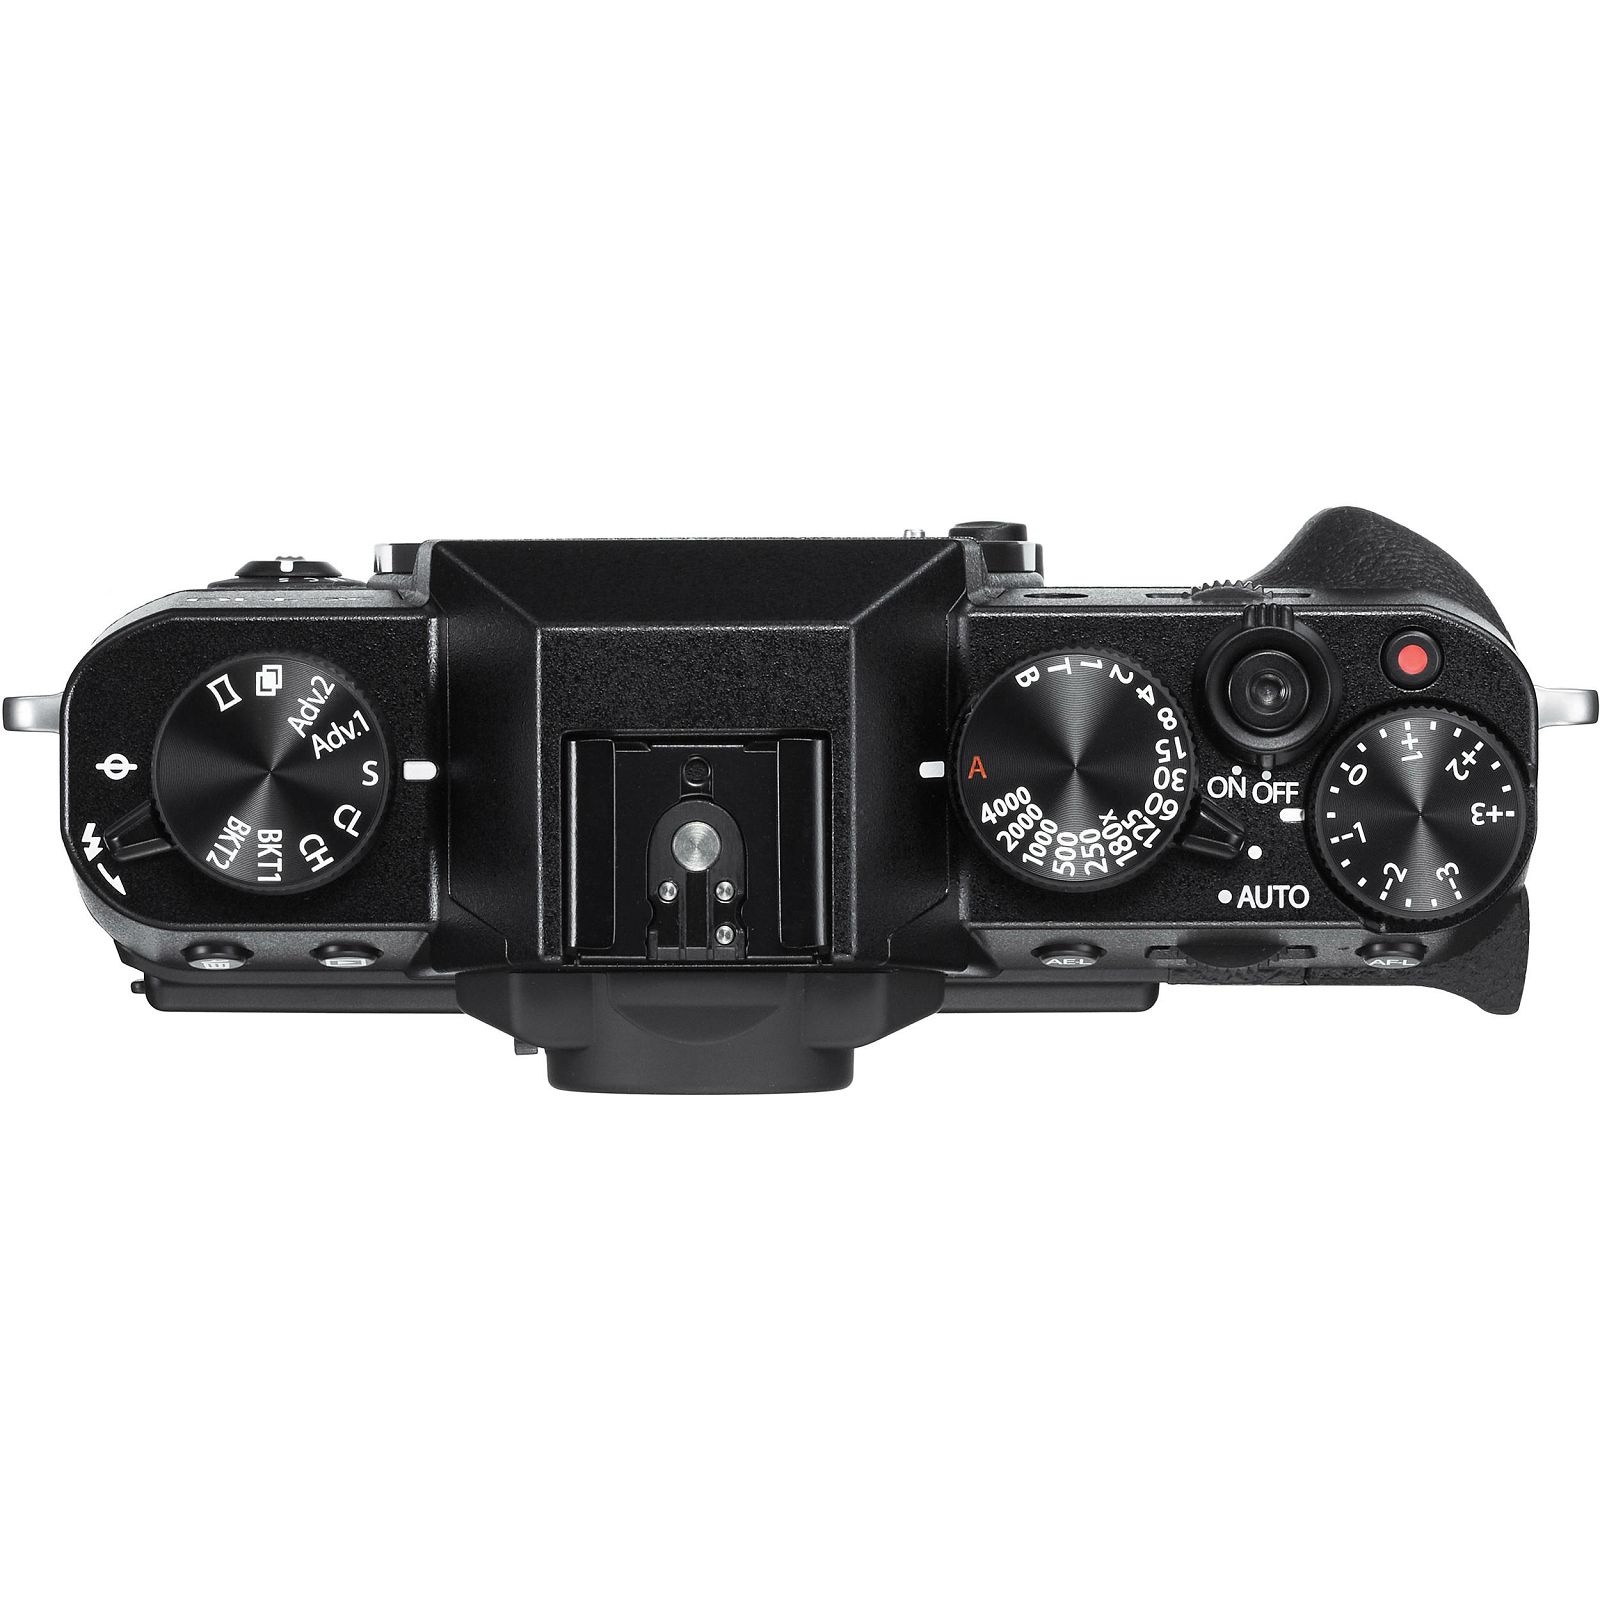 Fujifilm X-T10 + XC 16-50 f3.5-5.6 OIS II Black crni Digitalni fotoaparat Mirrorless camera Fuji Finepix s objektivom